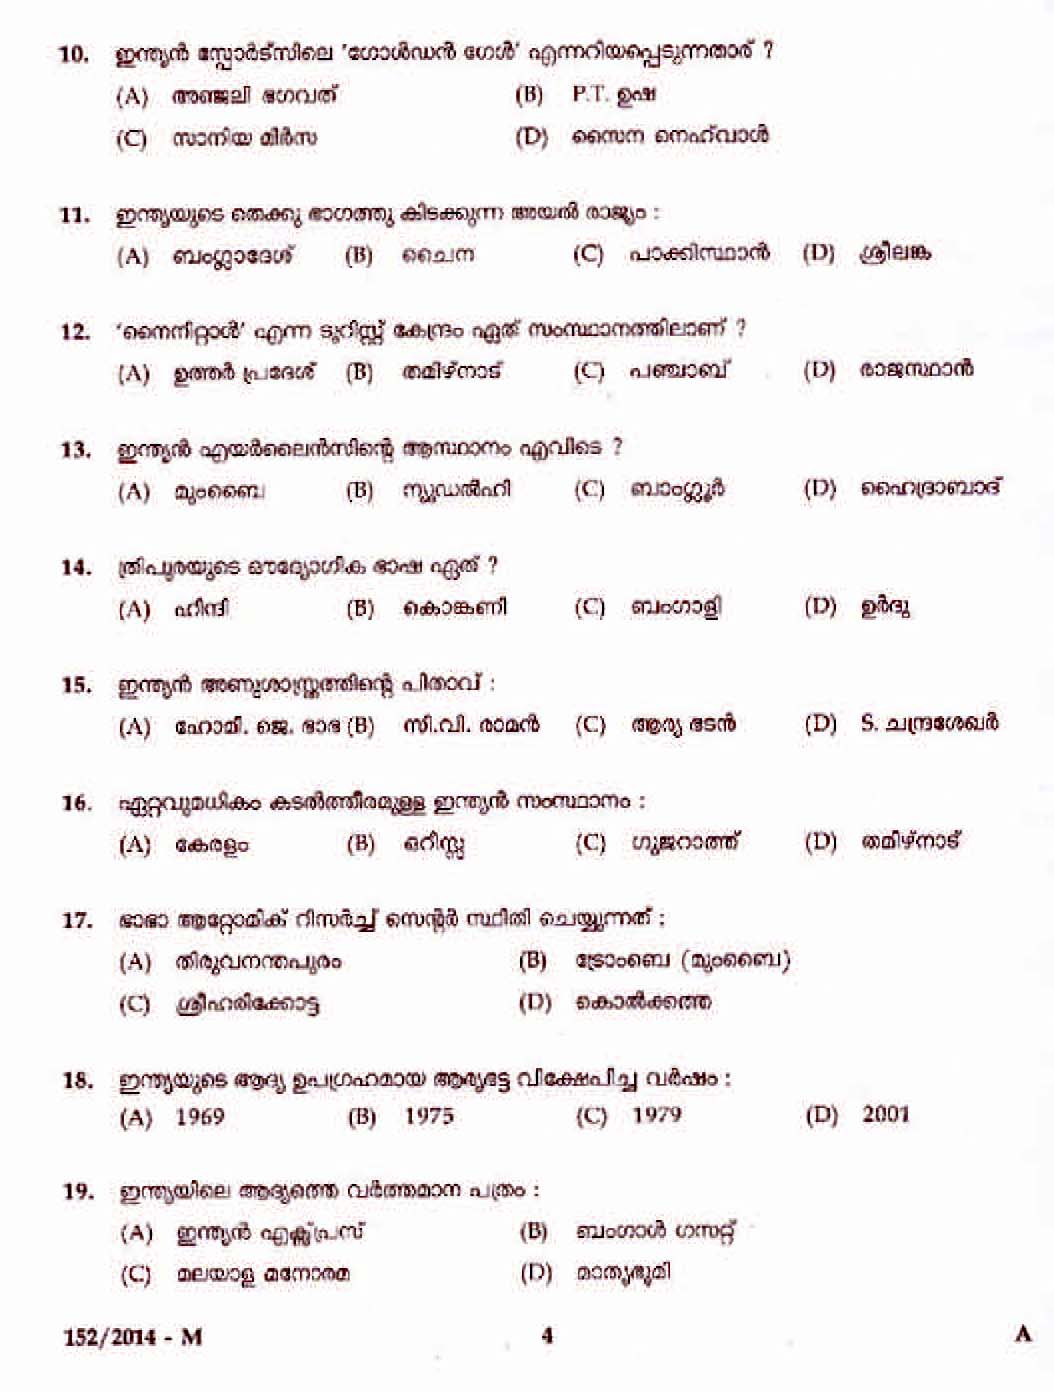 Kerala PSC Junior Assistant in KSRTC Exam 2014 Question Paper Code 1522014 M 2